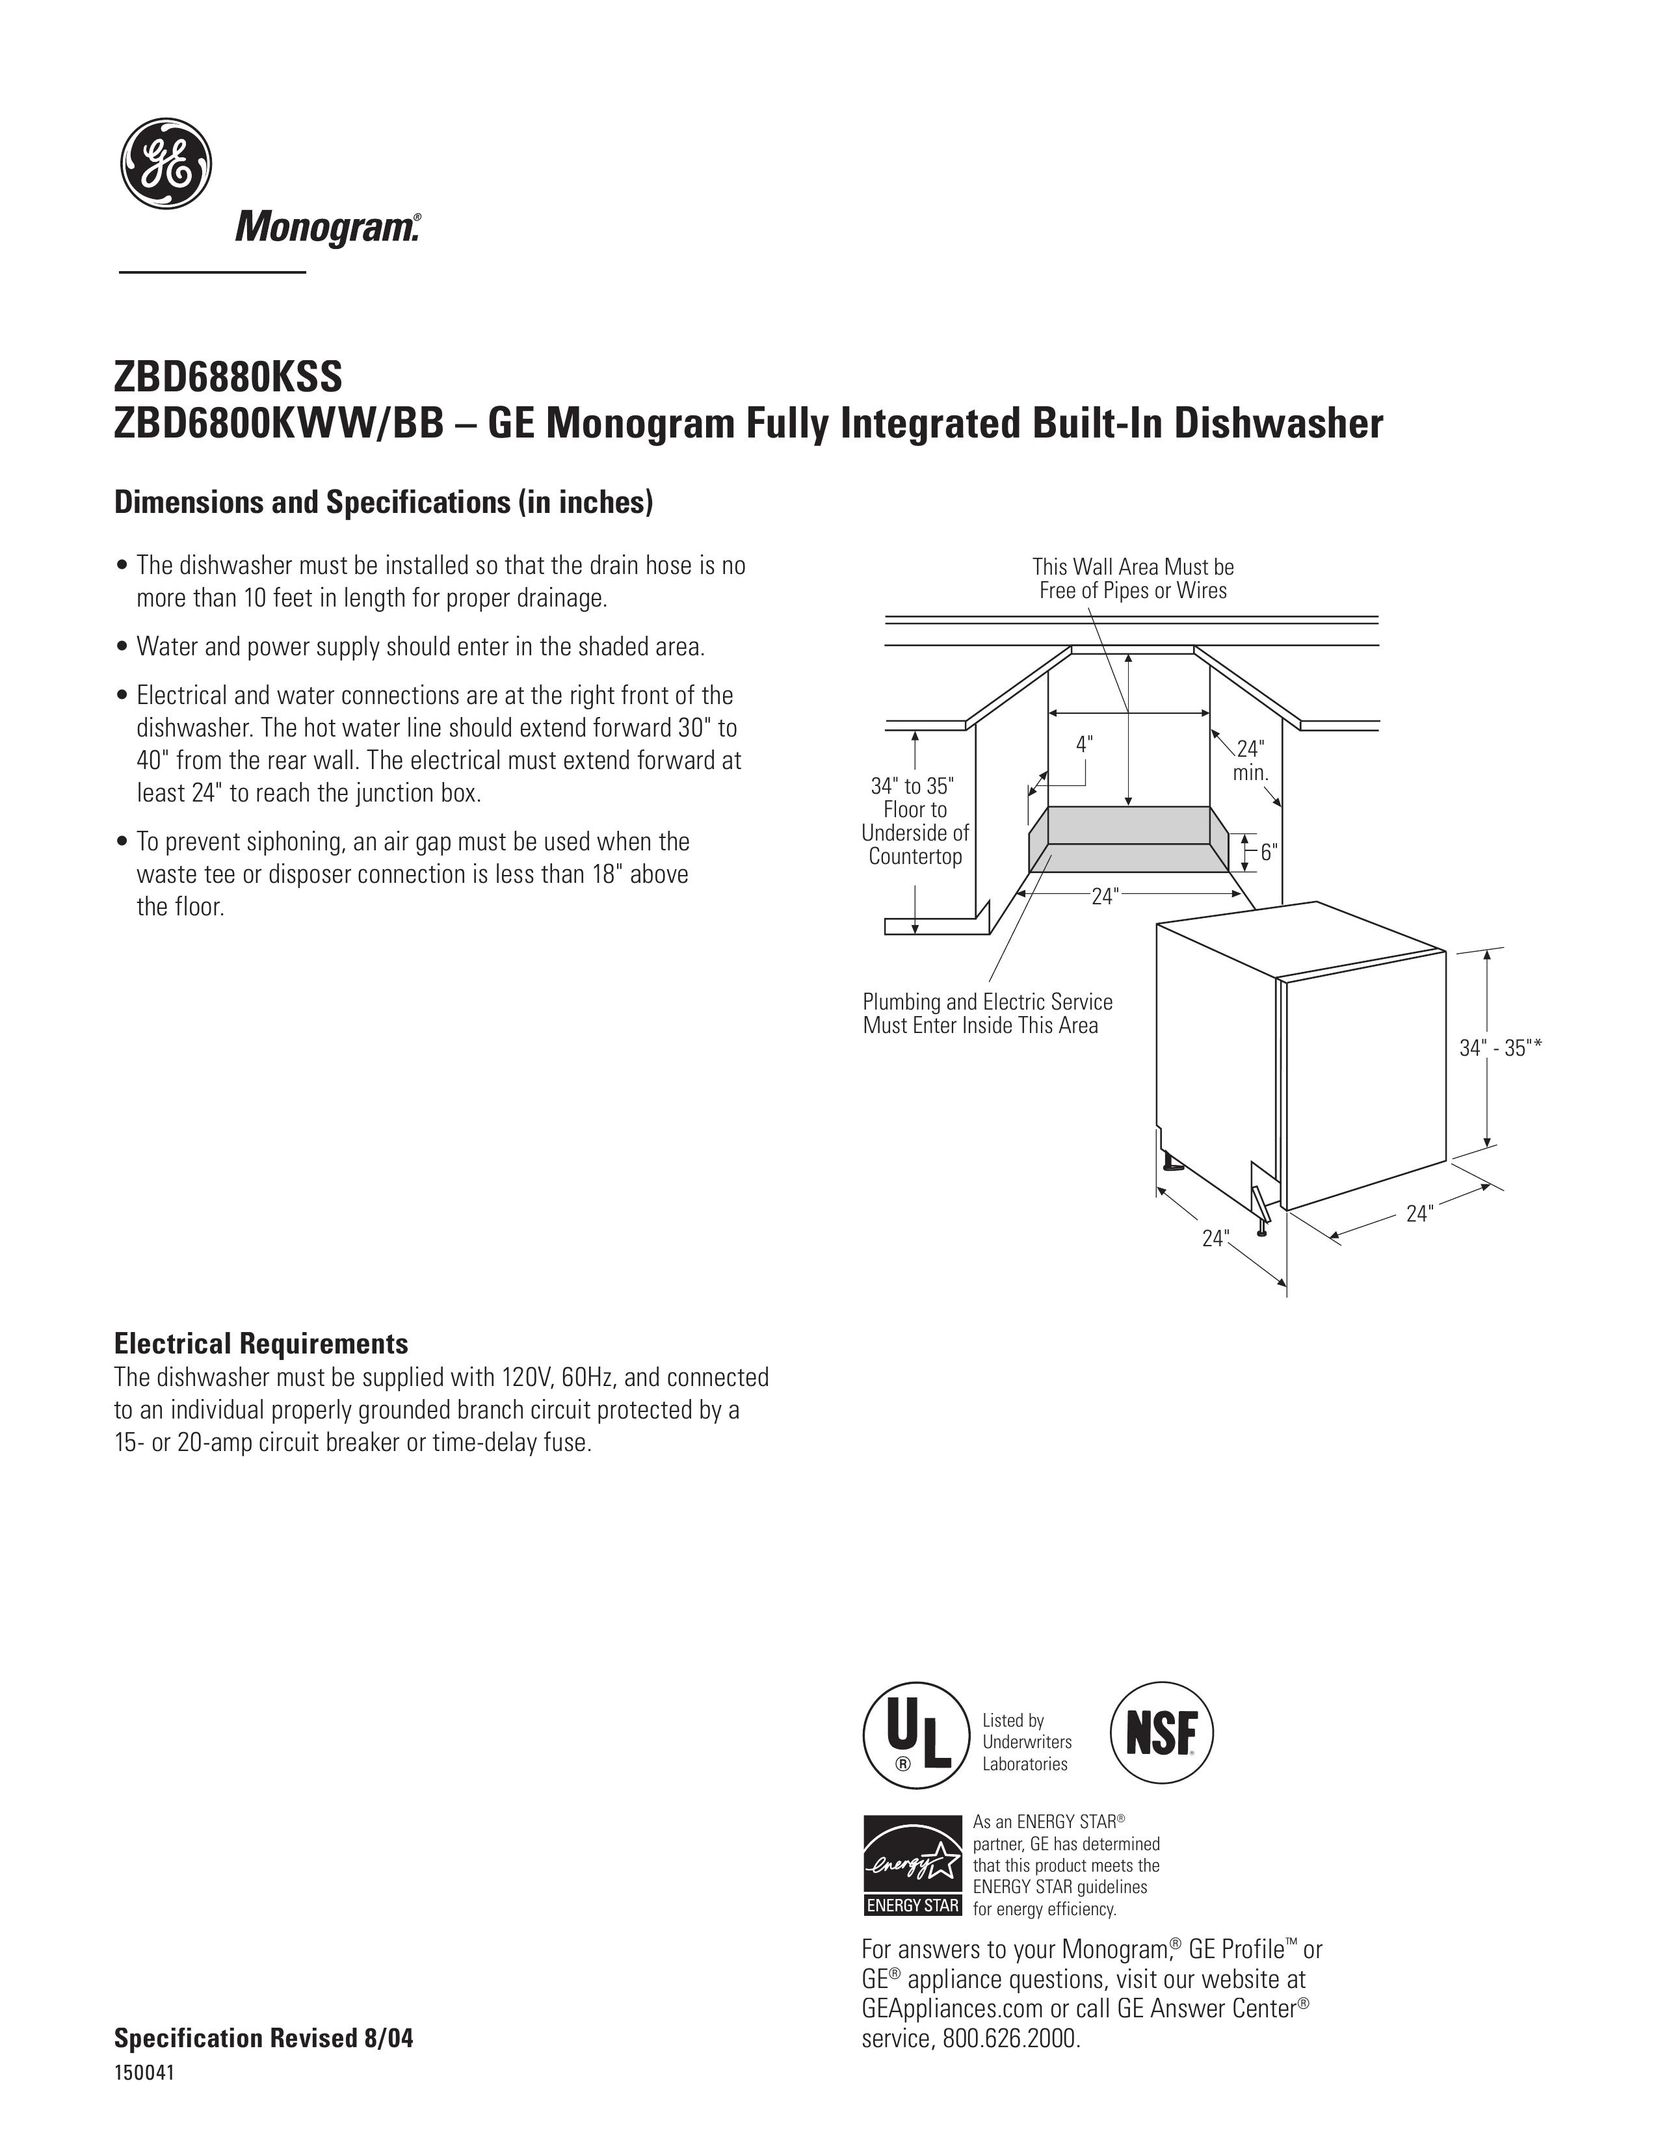 GE Monogram ZBD6880KSS Dishwasher User Manual